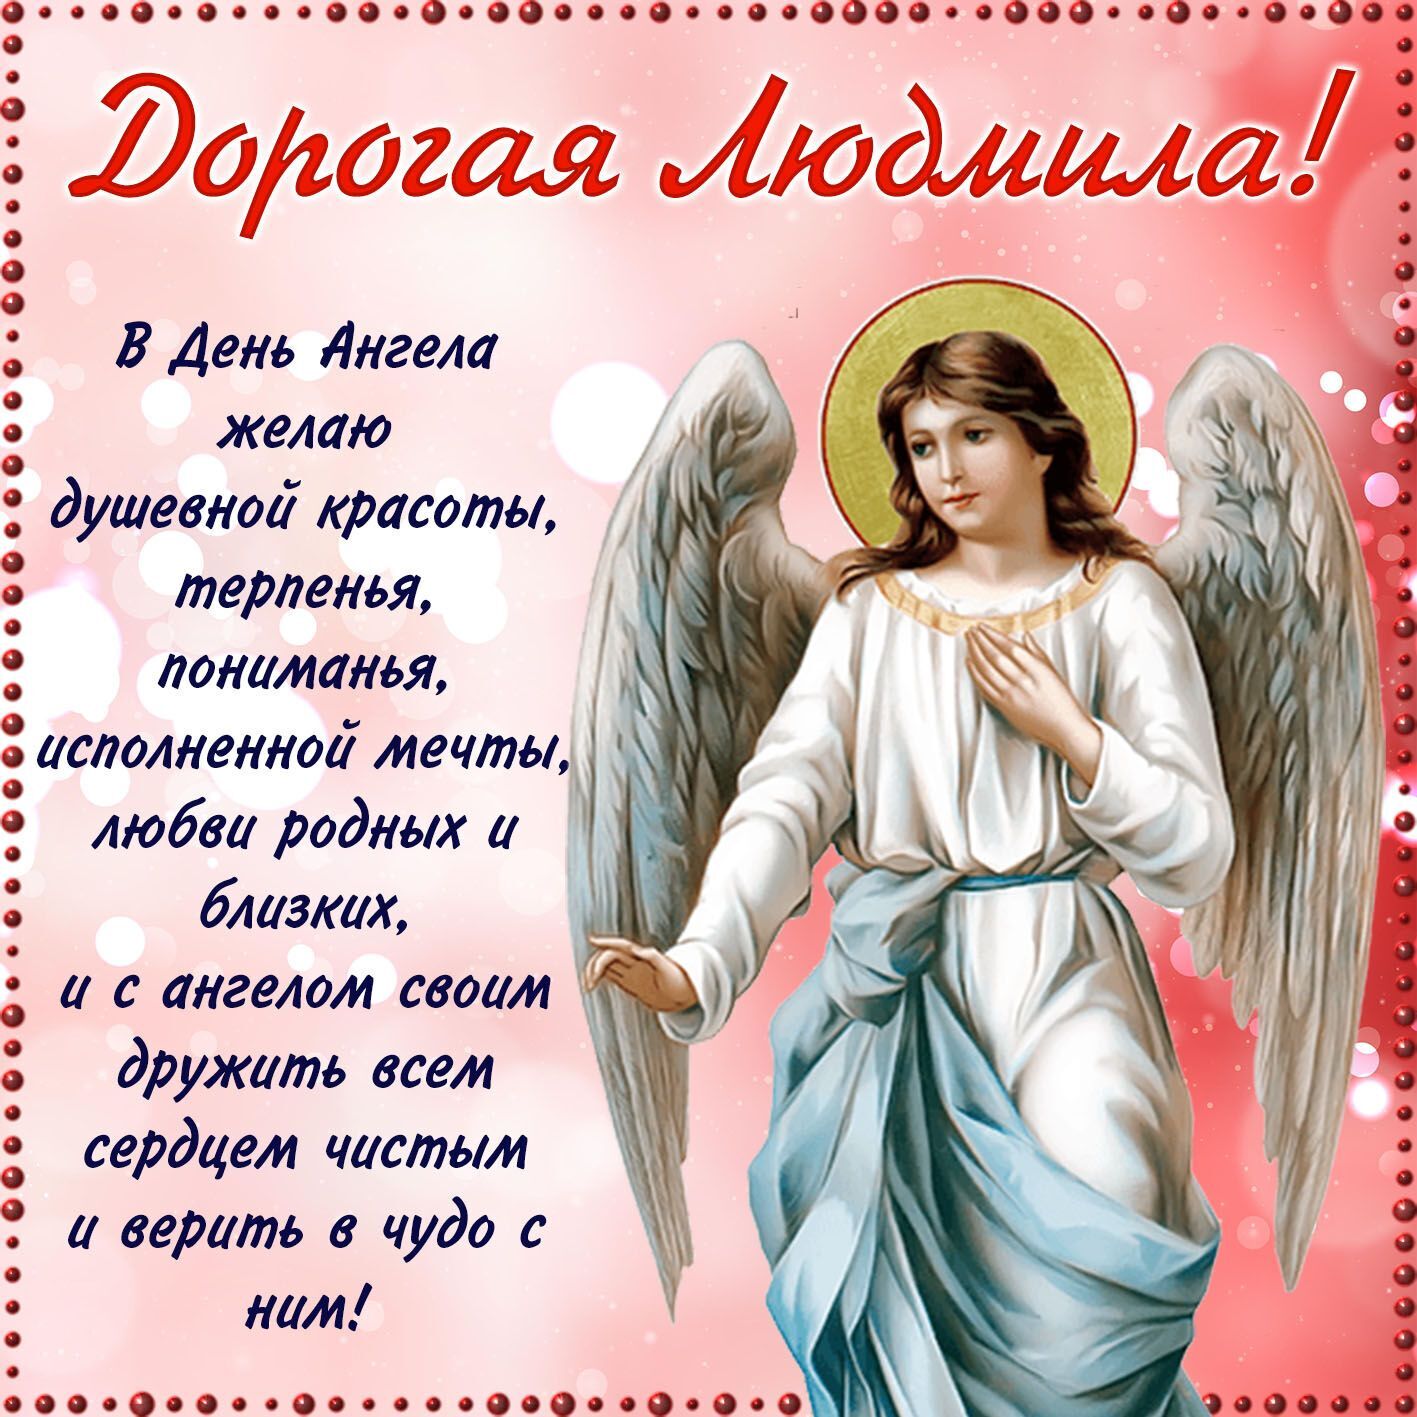 Пожелания в День ангела Людмилы